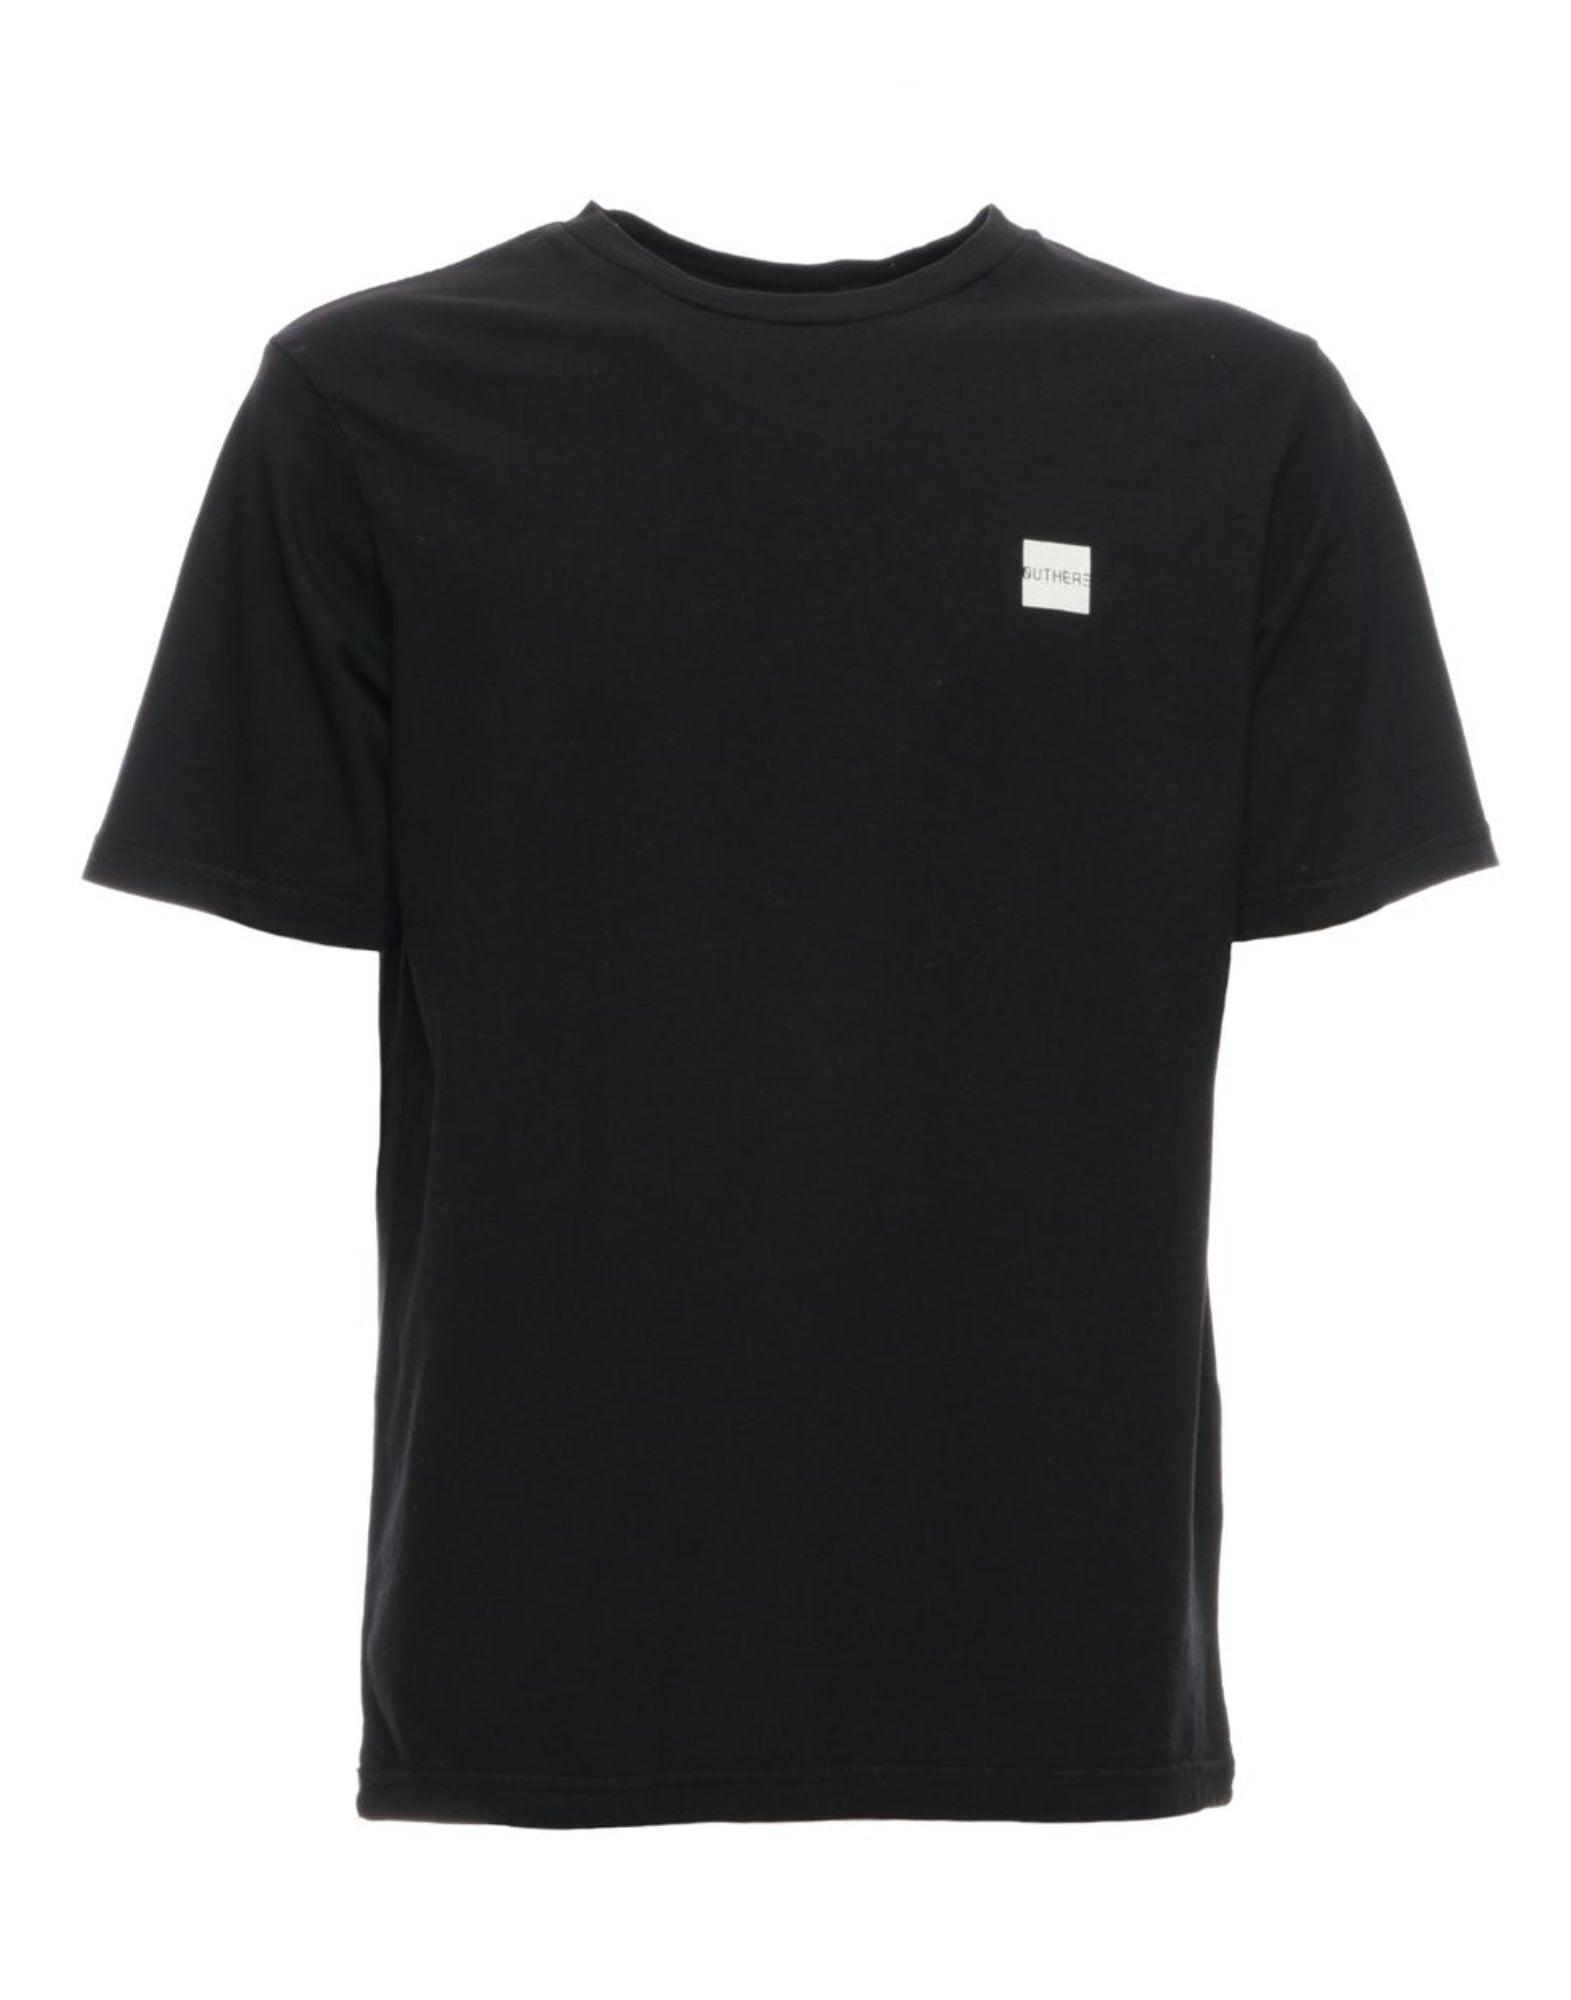 T-shirt man eotm101ac80 noir